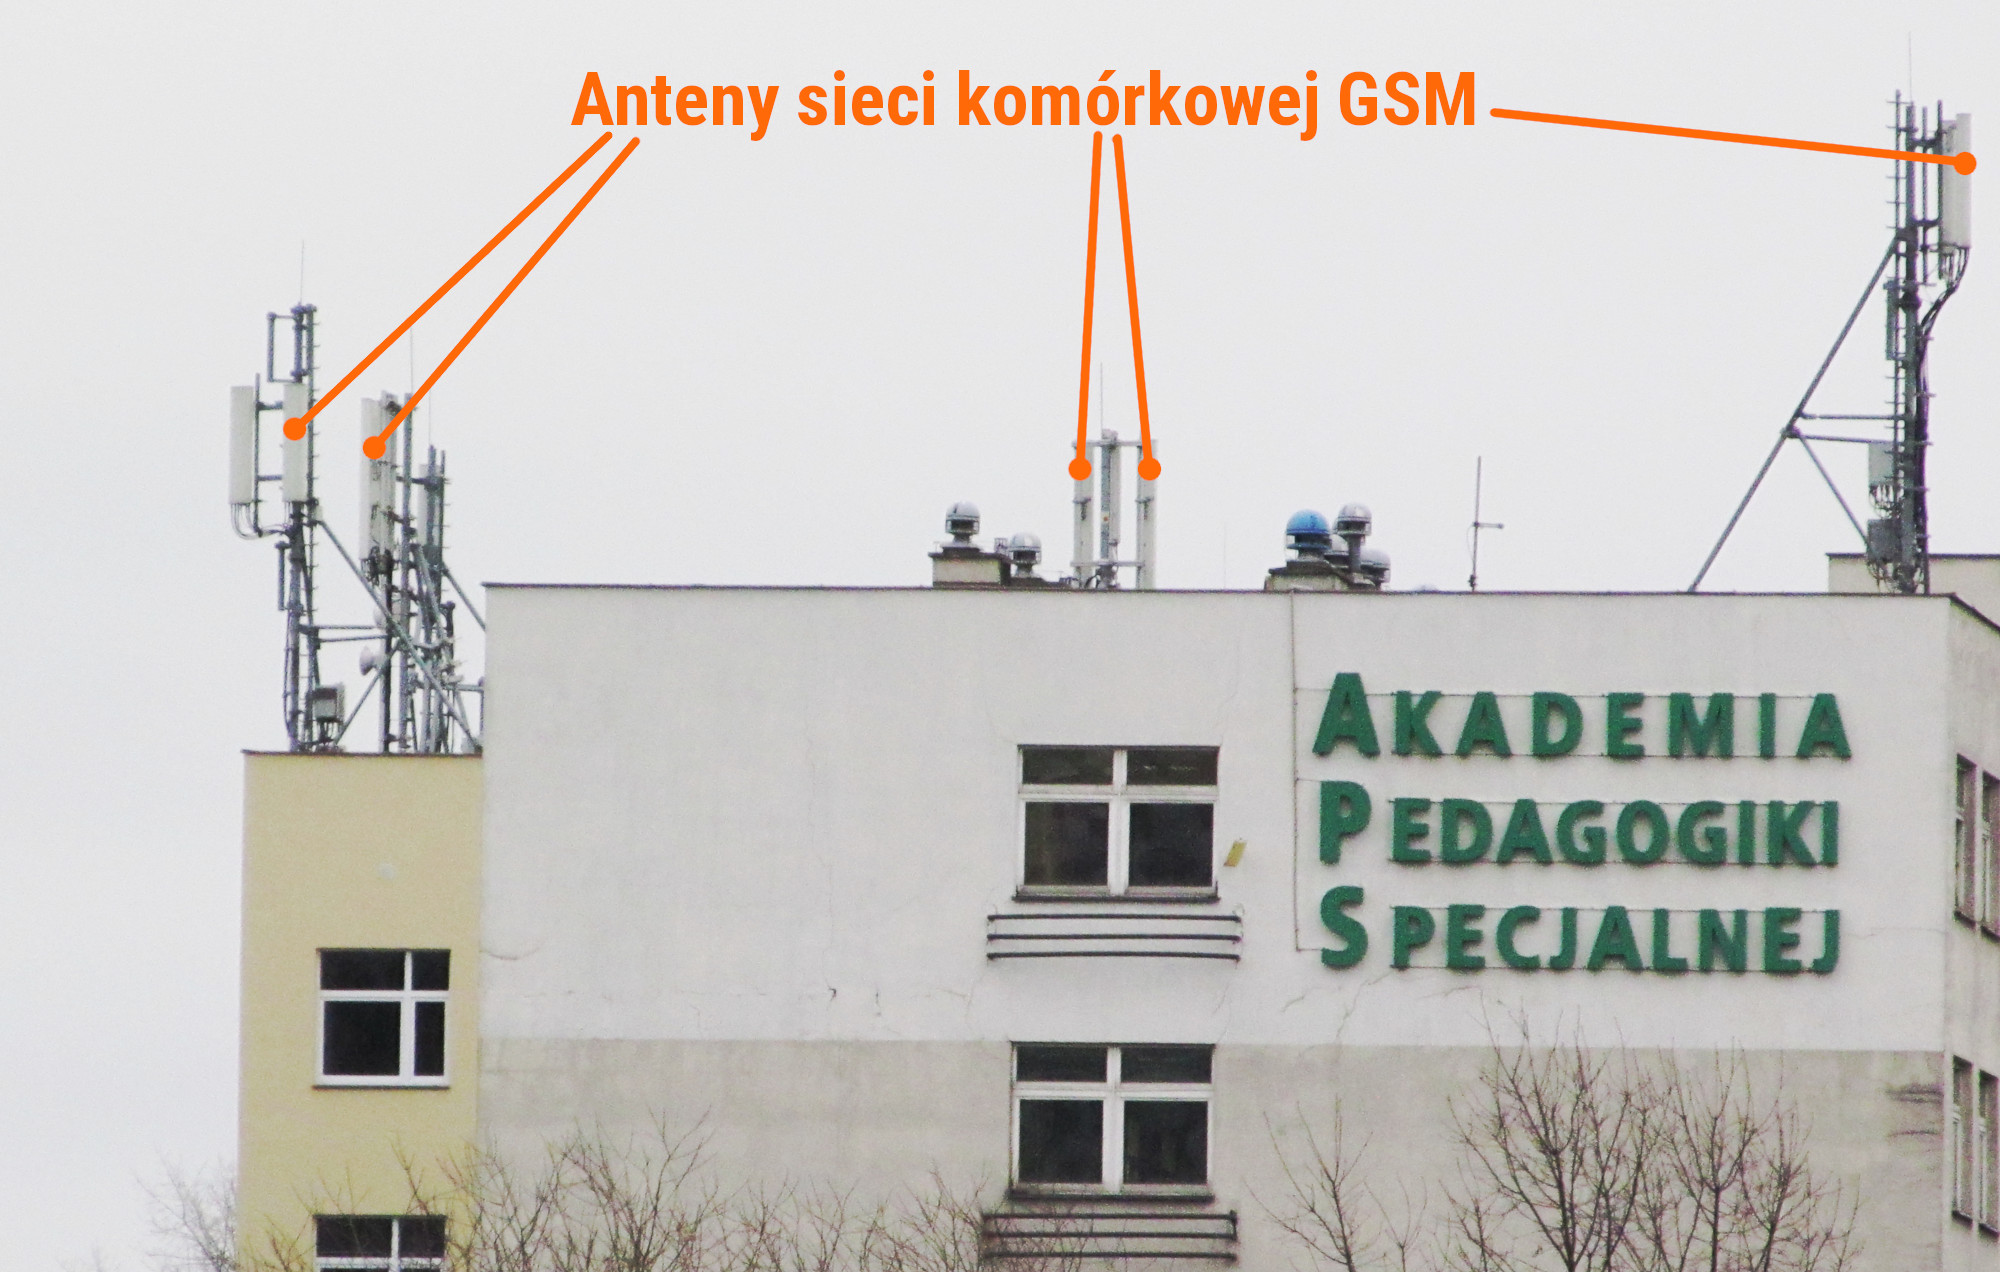 Anteny sieci GSM na dachu budynku